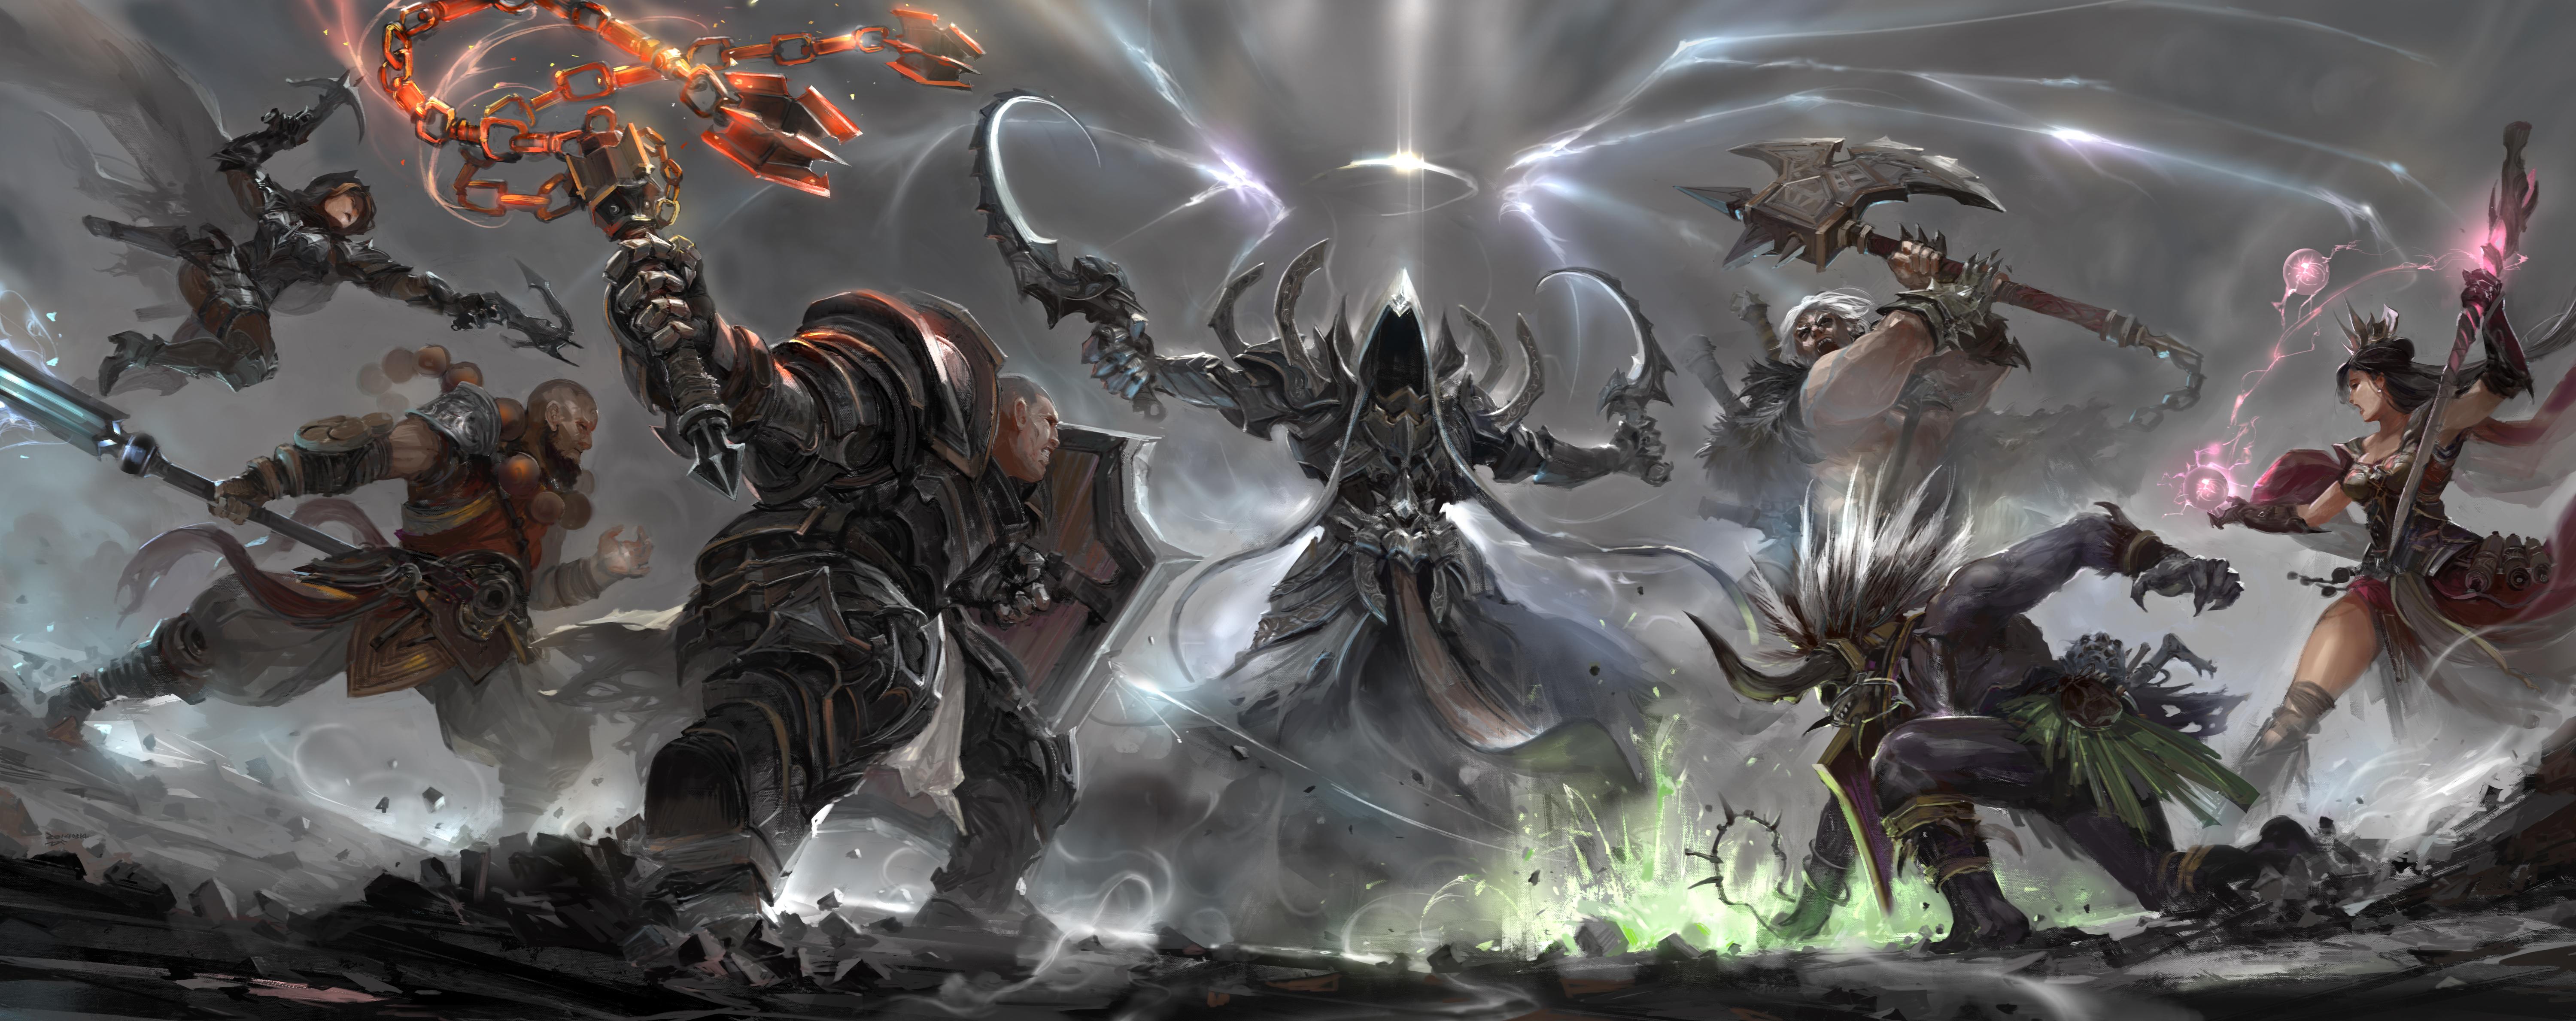 Video Game Diablo Iii Reaper Of Souls 4k Ultra HD Wallpaper By Ro733